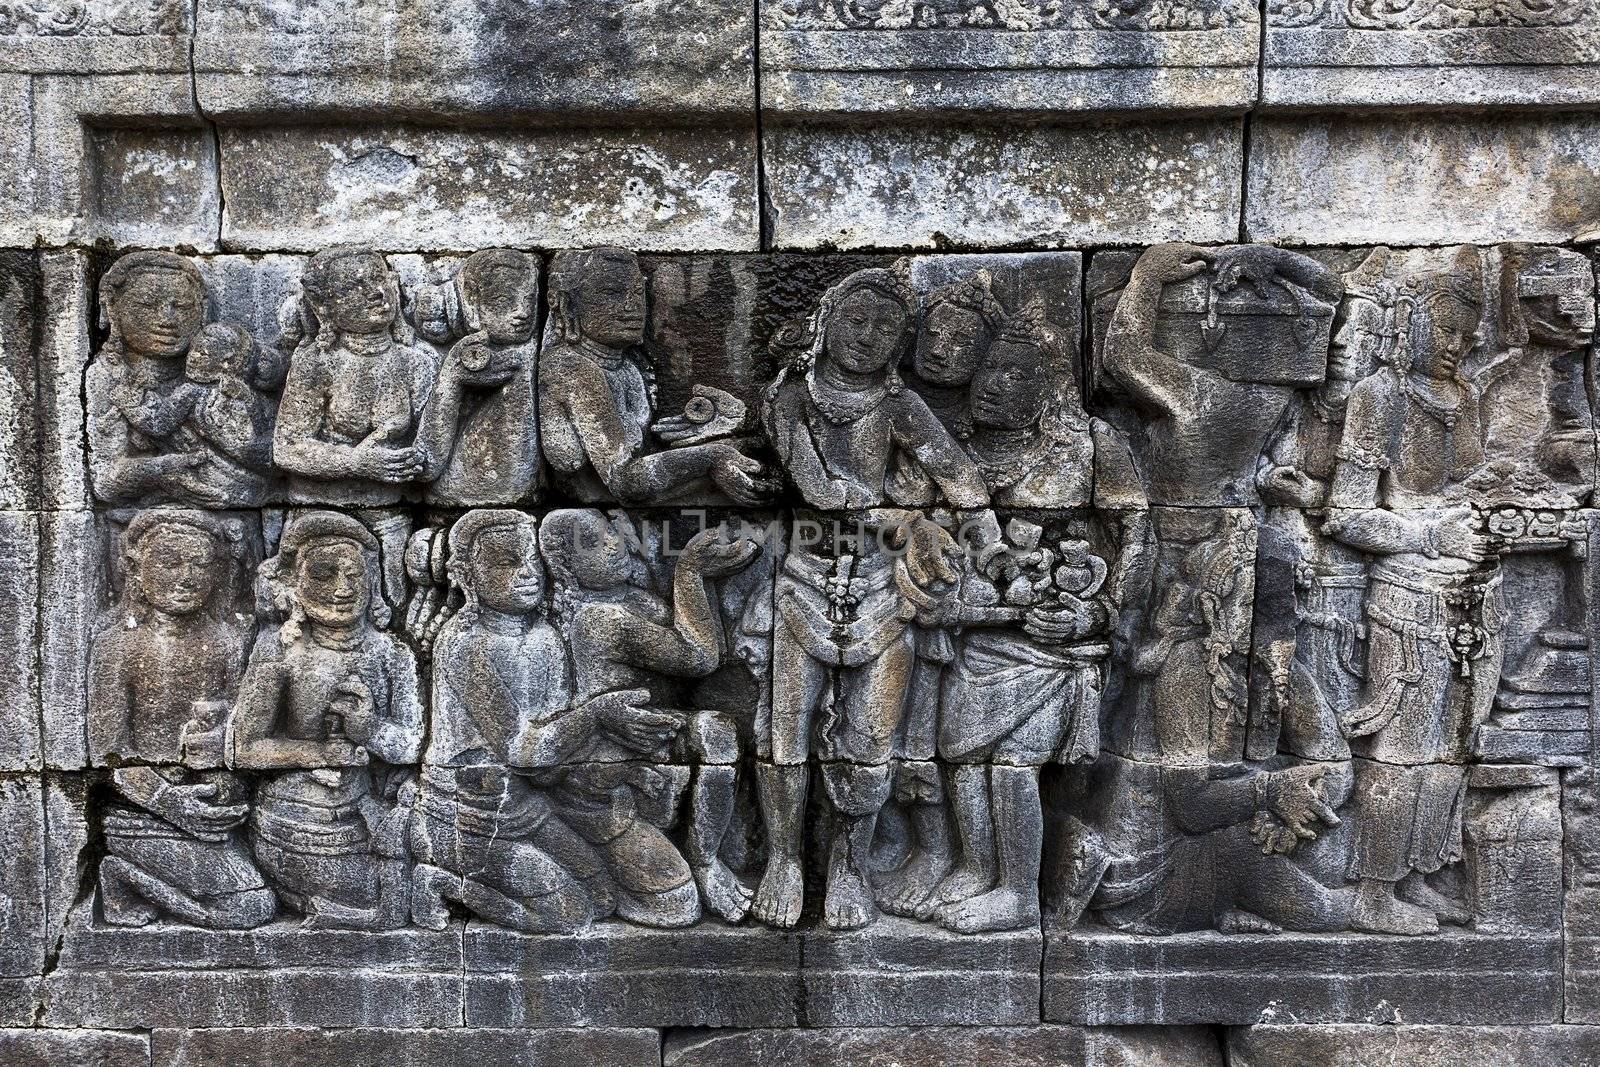 Carved stone at Borobudur temple on Java, Indonesia